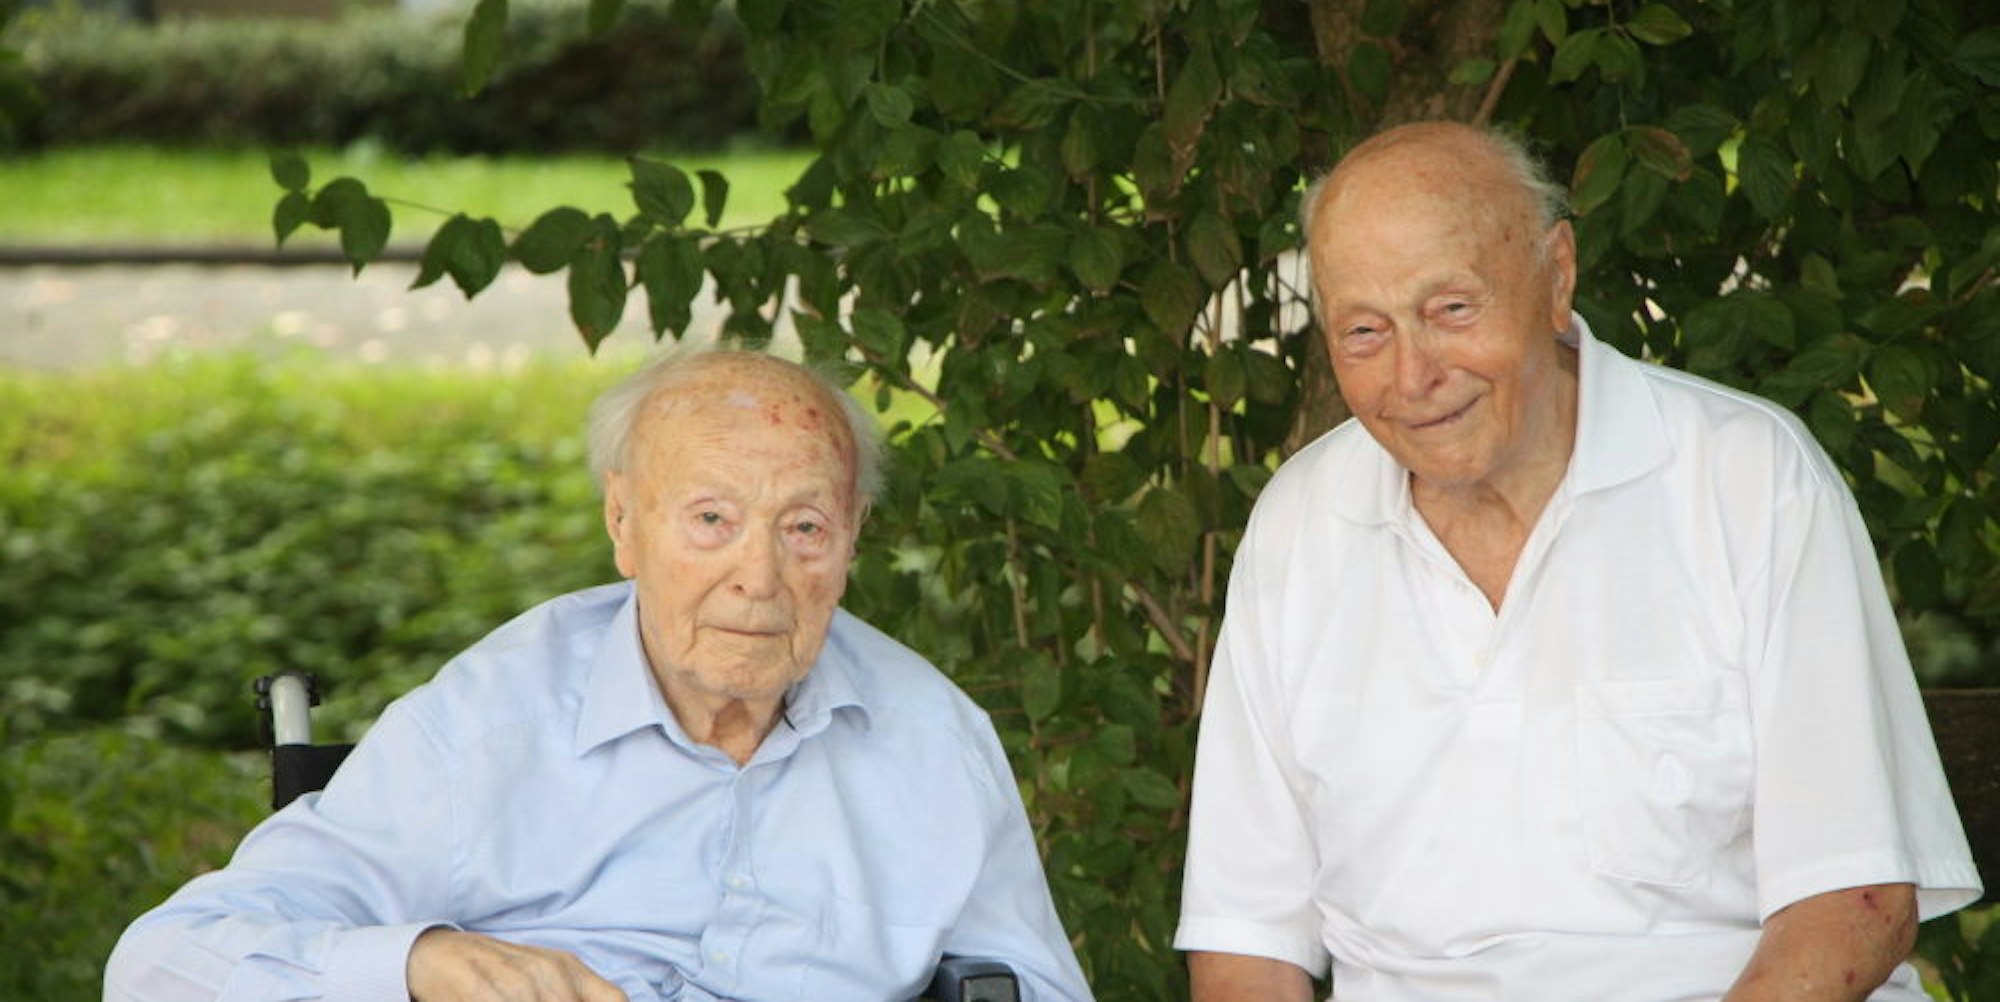 Willi und Franz Göb (v.l.) feiern heute ihren 100. Geburtstag. Willi Göb wohnt im Wohnstift Beethoven in Bornheim, Franz Göb in Brühl.